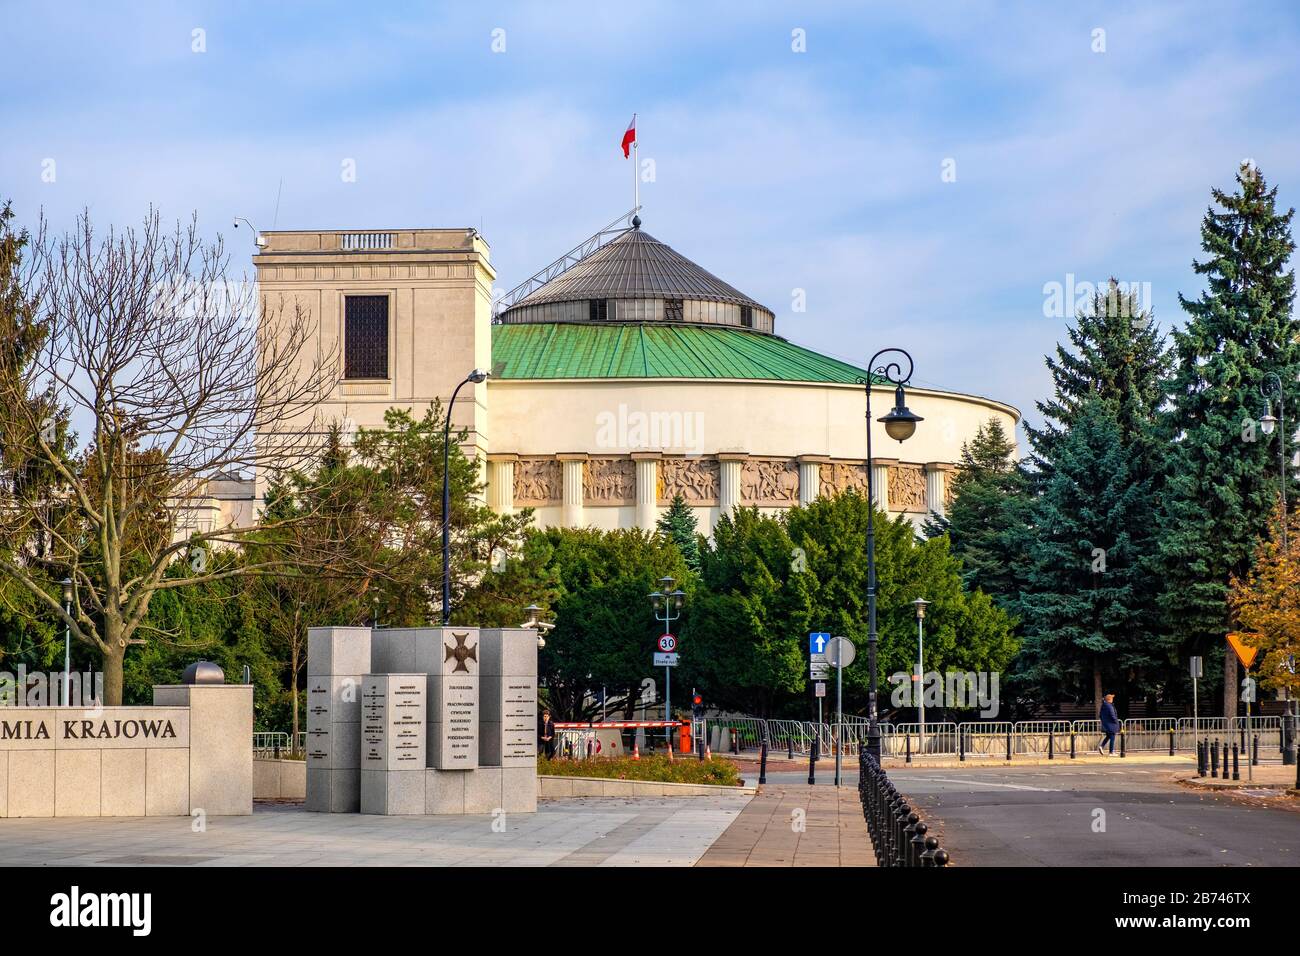 Varsovie, Mazovia / Pologne - 2019/10/26 : Sejm - Chambre basse du parlement polonais - siège de la rue Wiejska dans le centre historique de Varsovie Banque D'Images